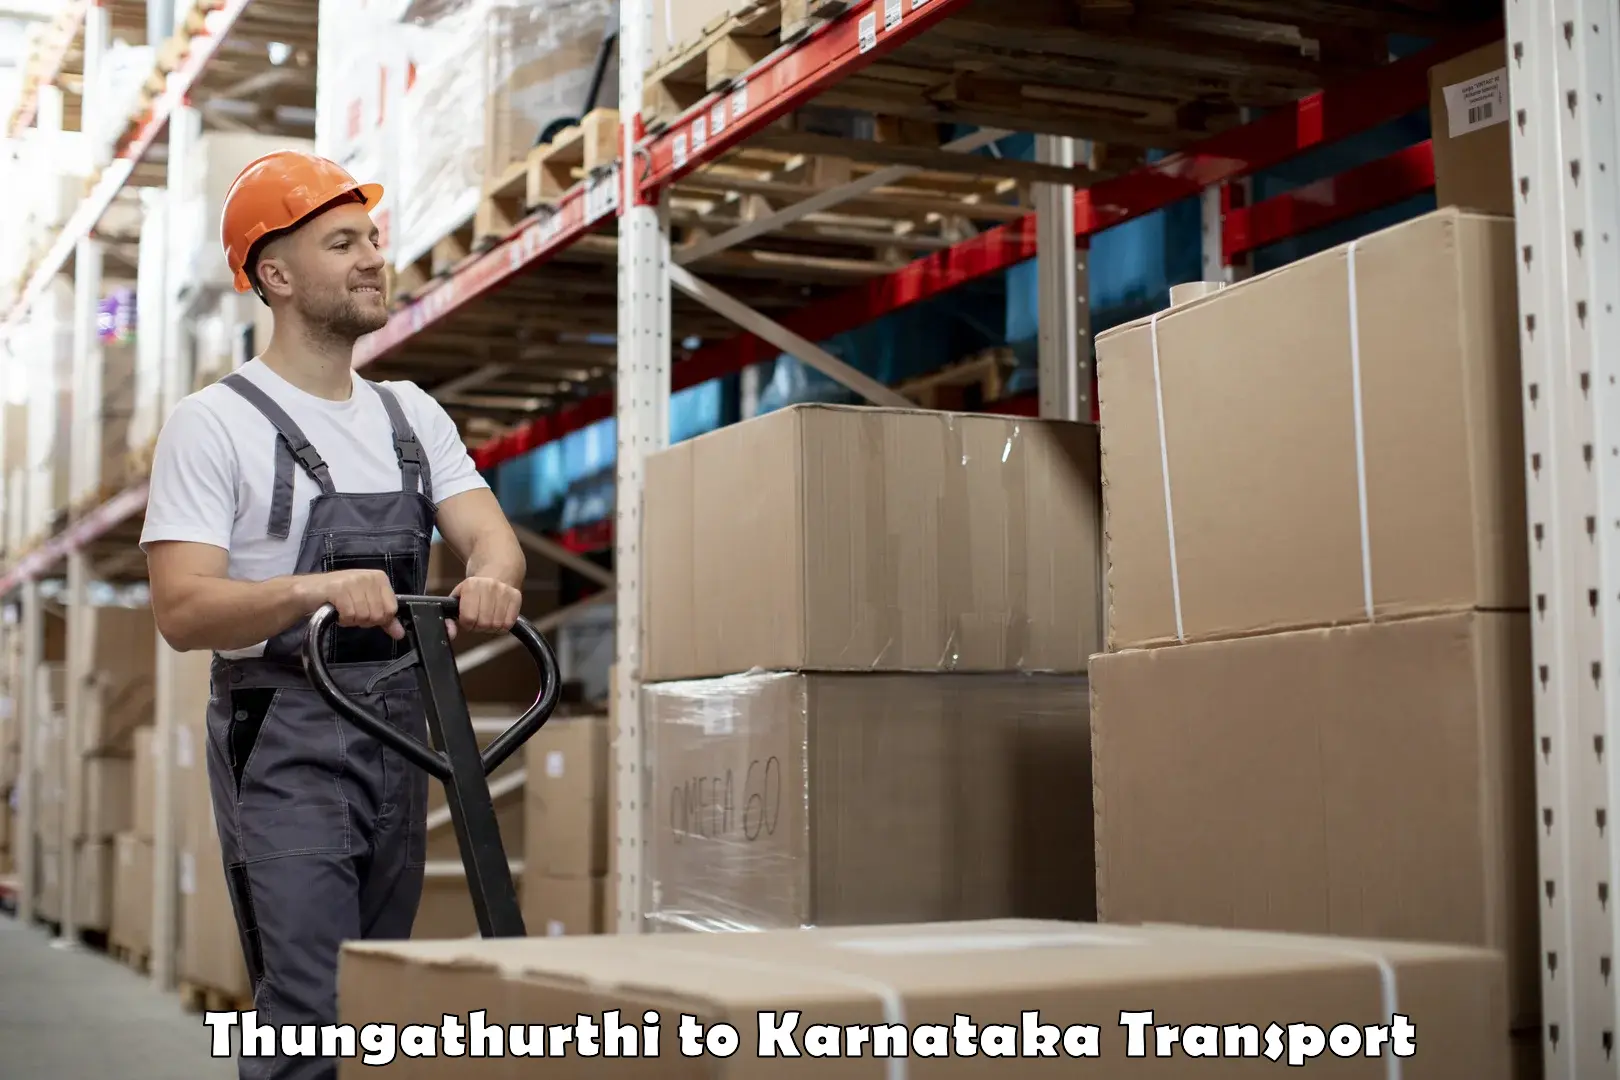 Nationwide transport services Thungathurthi to Mangalore